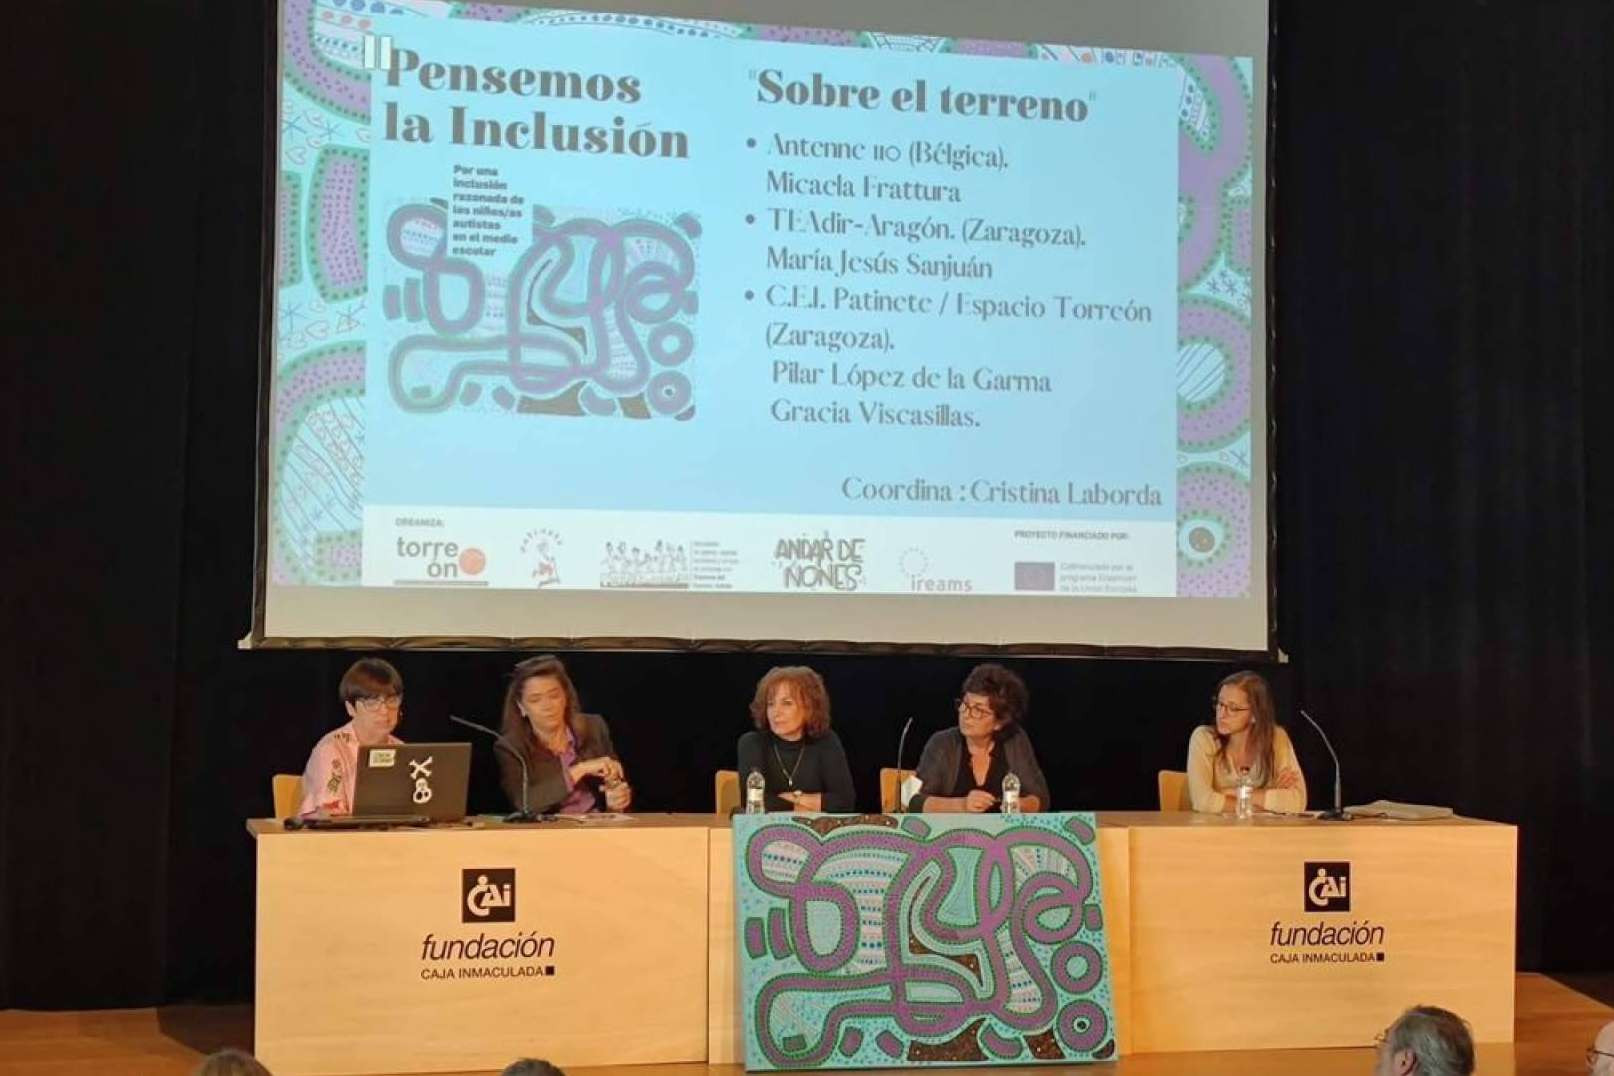  El centro psicológico infantil Torreón organiza conferencias para visibilizar el autismo 